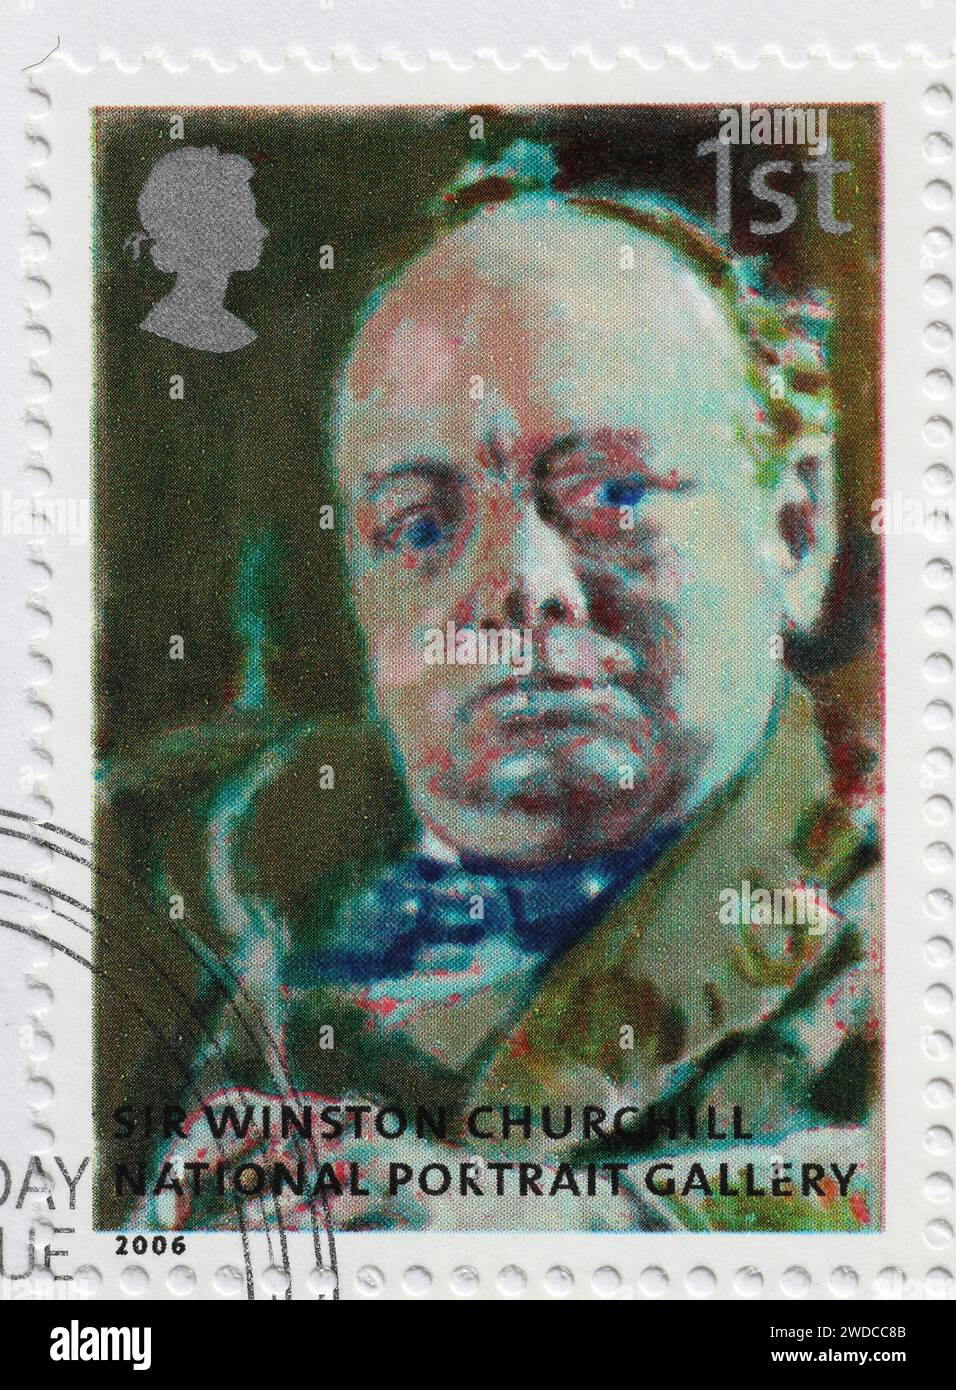 Wiston Churchill dalla National Portrait Gallery su francobollo Foto Stock